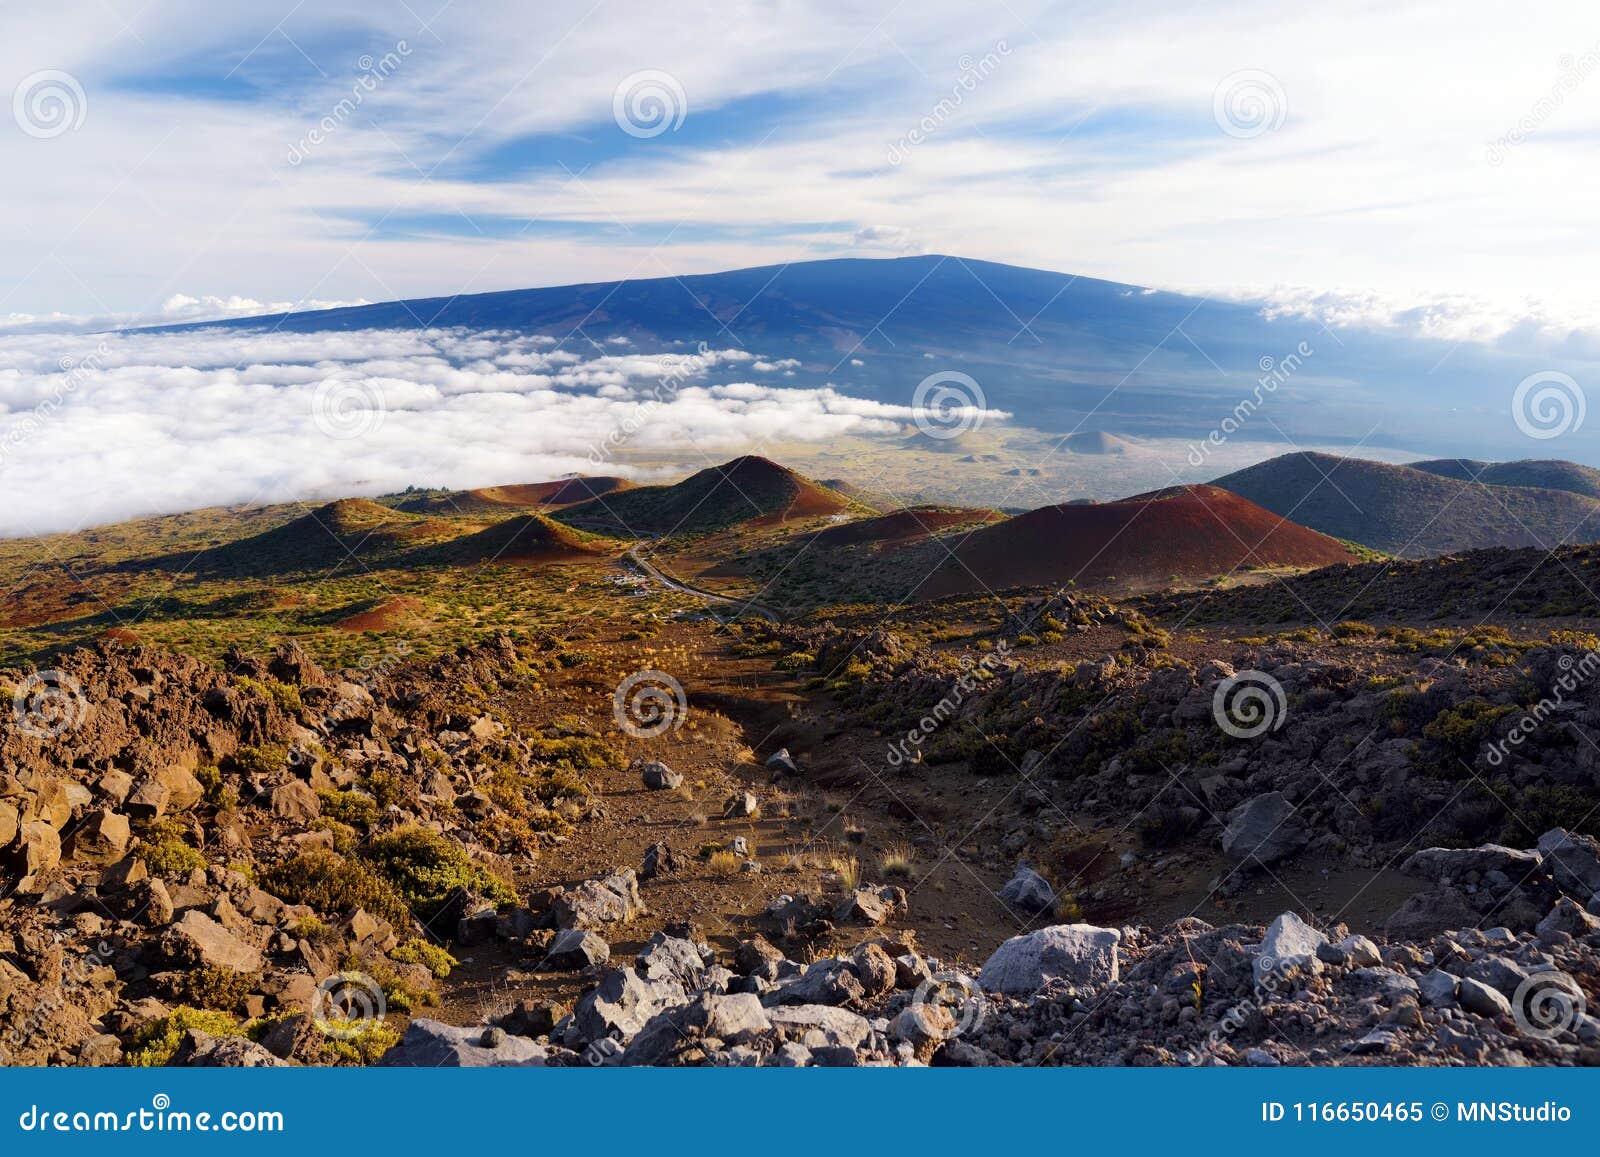 breathtaking view of mauna loa volcano on the big island of hawaii